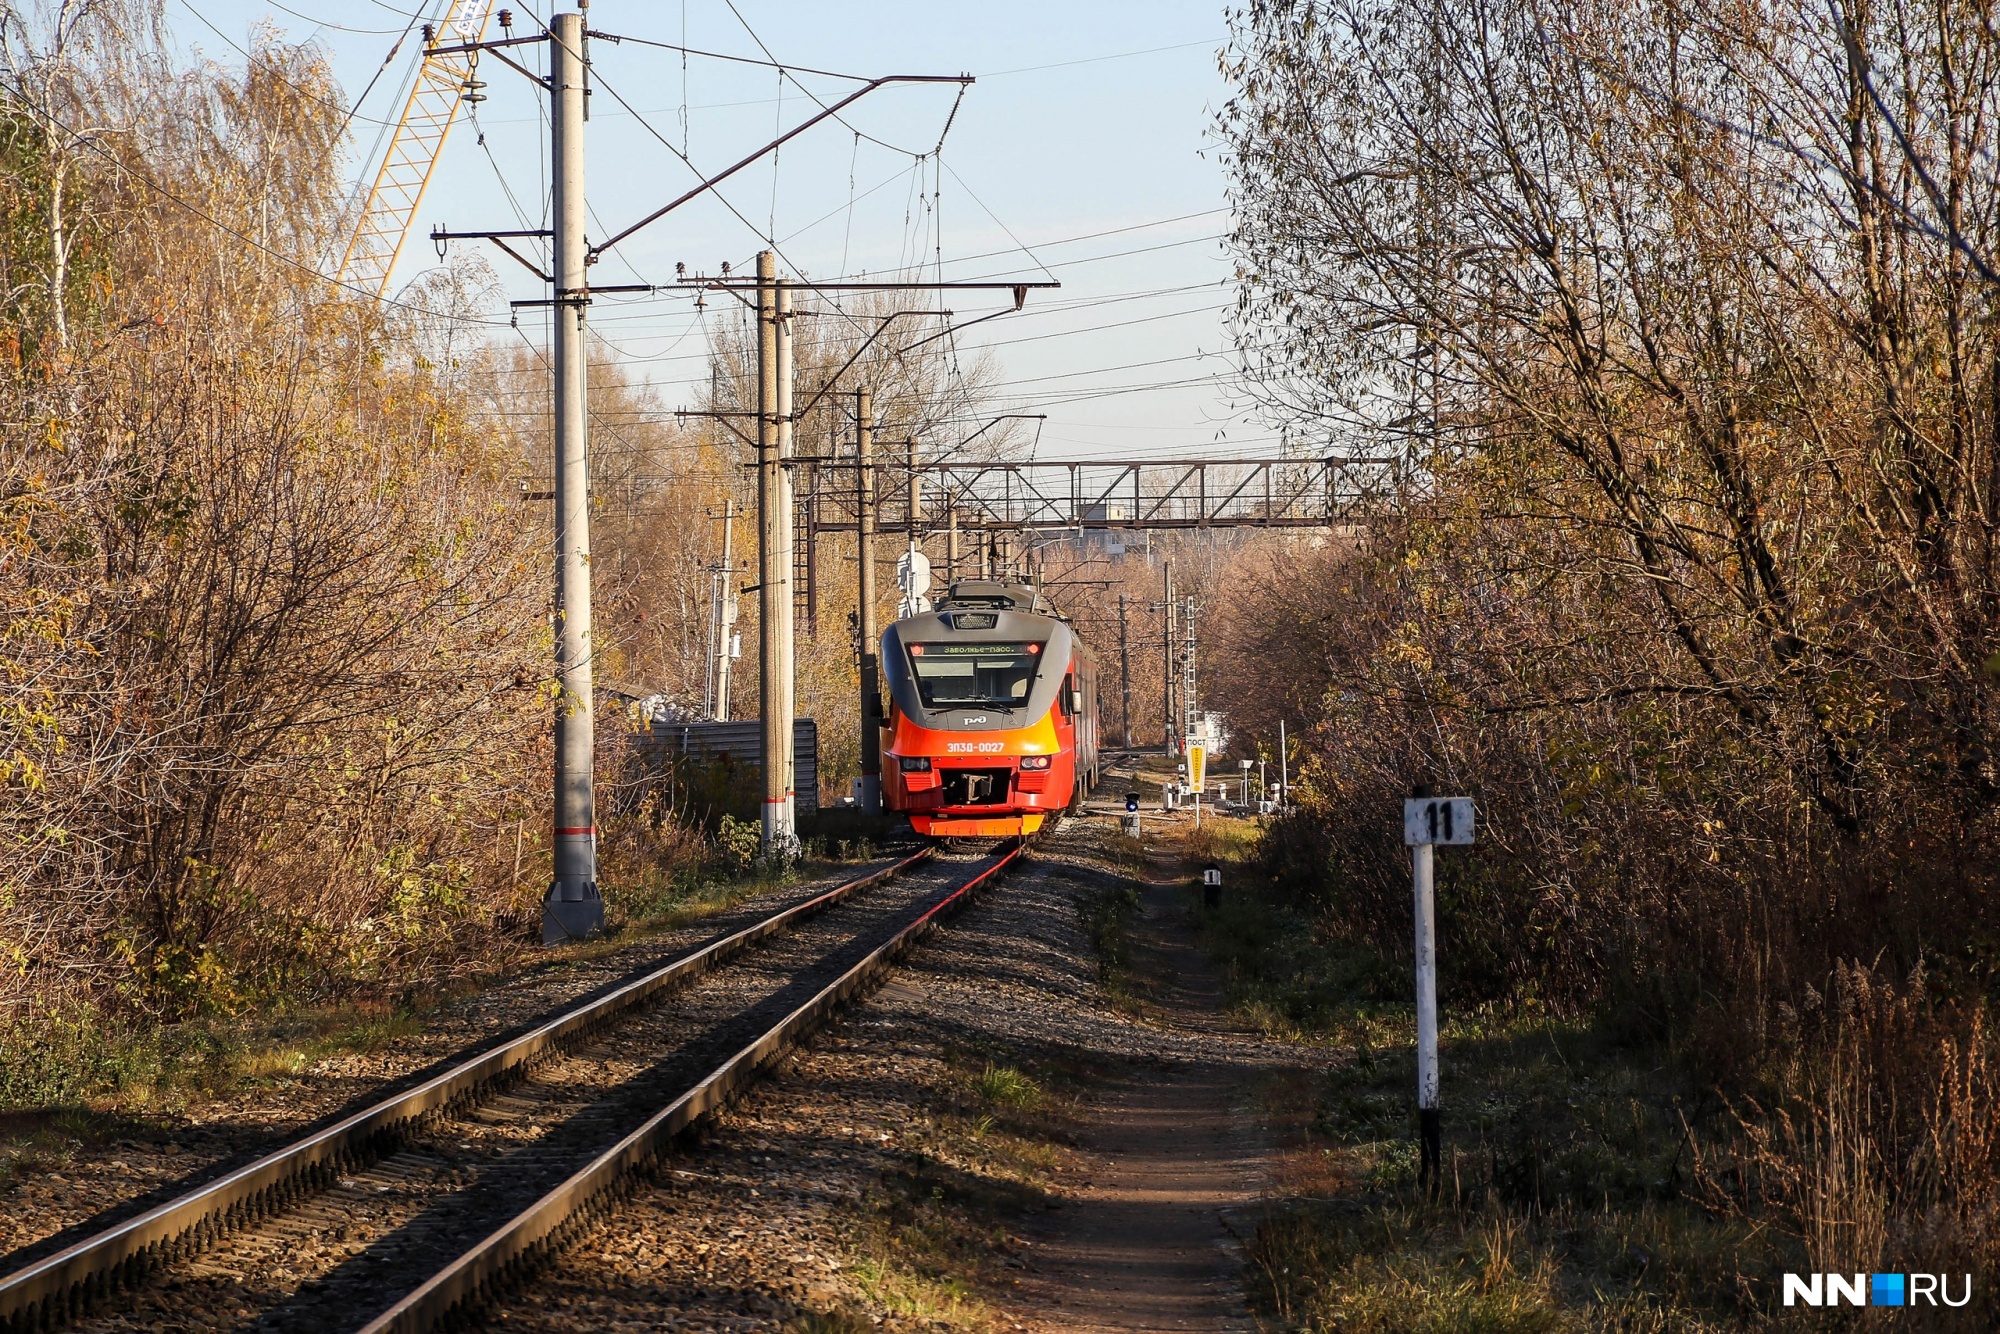 Погибли на месте: мужчина и мальчик попали под поезд в Шахунье